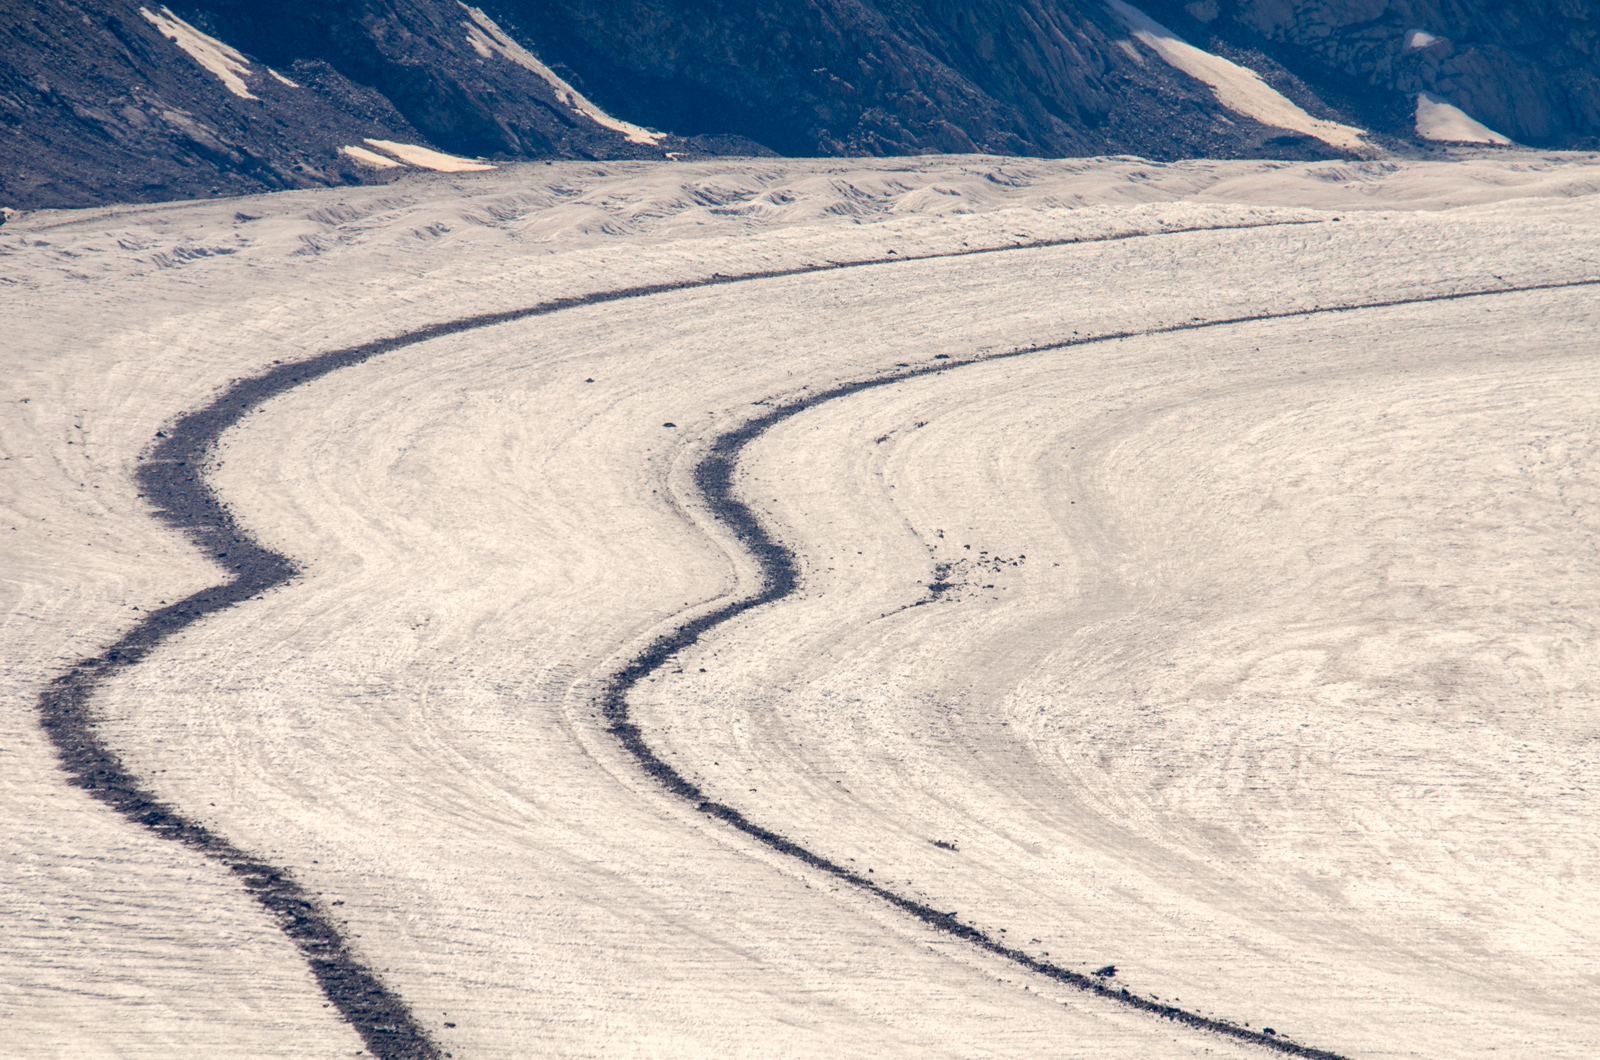 detalle del glaciar Aletsch